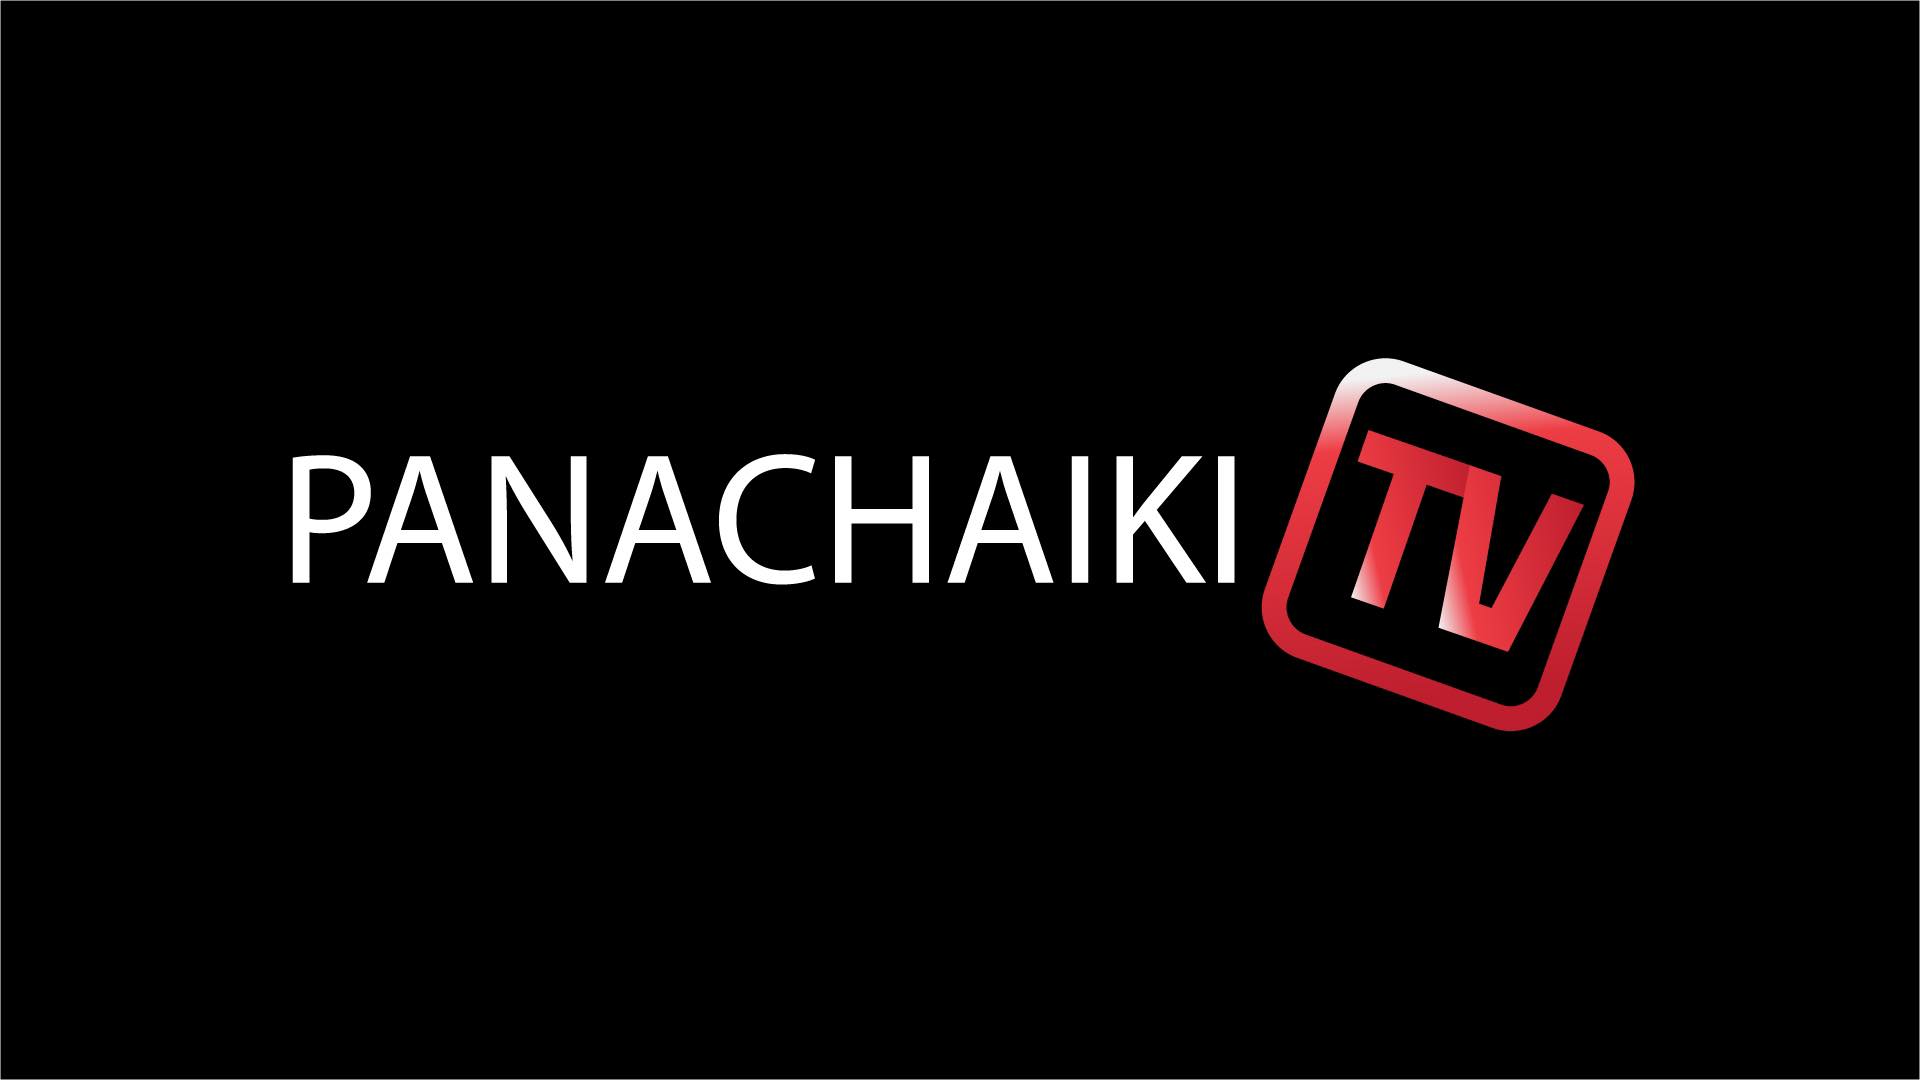 Πρεμιέρα για το Panachaiki TV στο σημερινό φιλικό παιχνίδι με τον Ιωνικό.